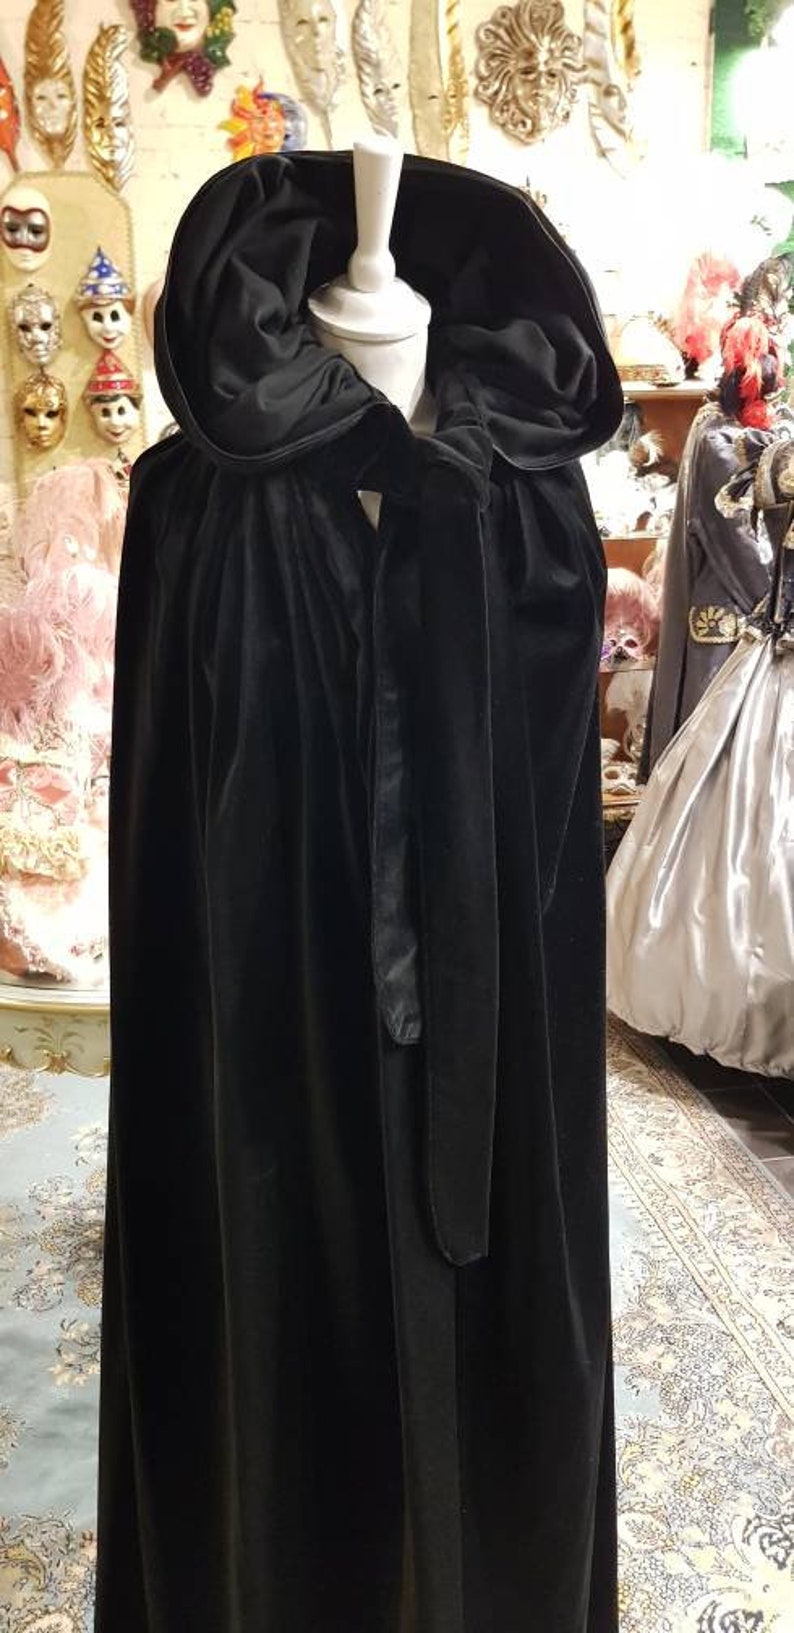 Domino cloak in very warm handmade velvet hand madevelvet | Etsy